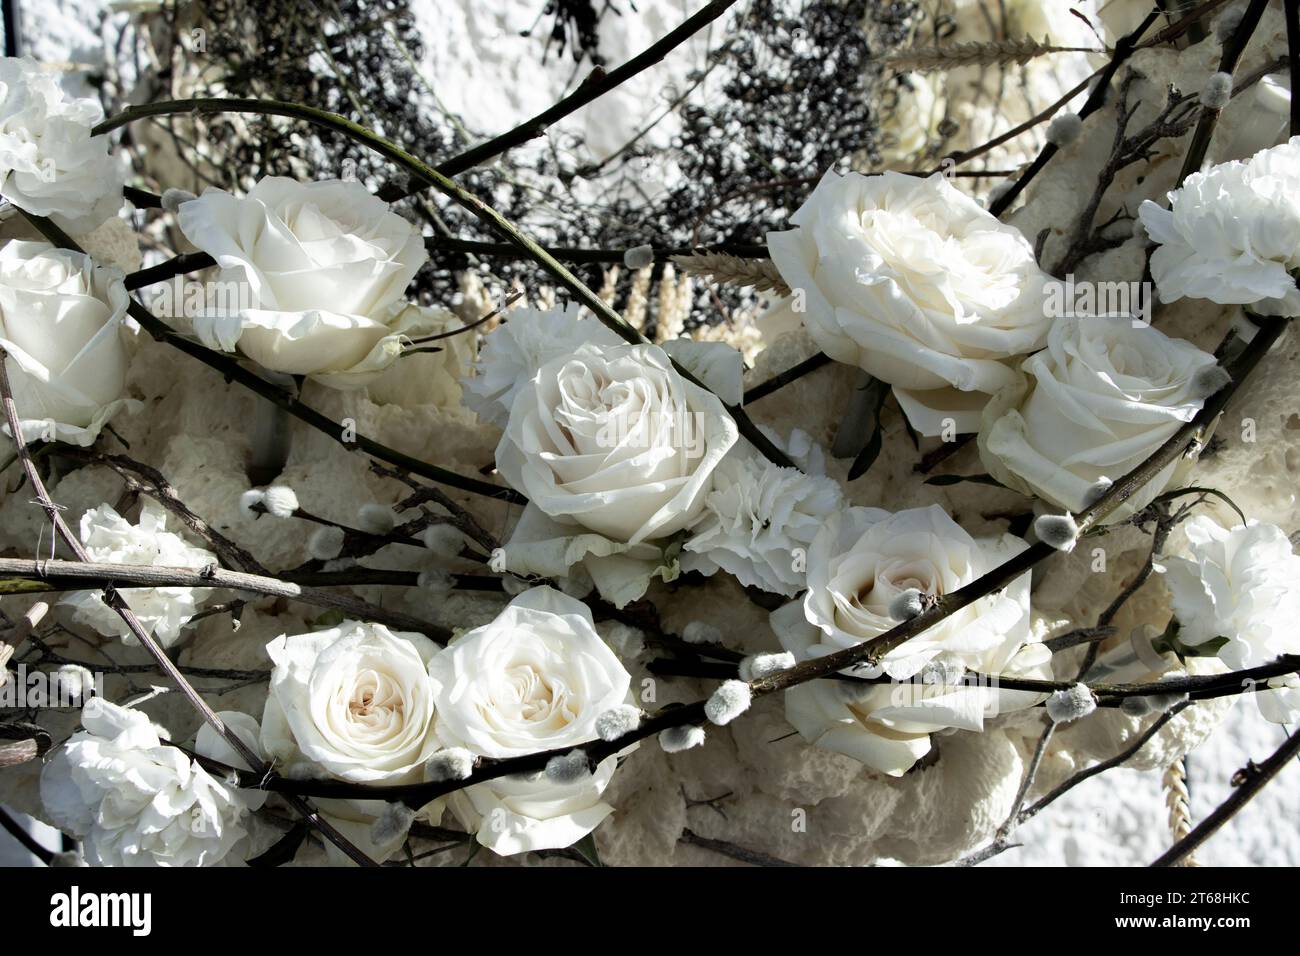 Teilbetrachtung eines Blumenarrangements aus weißen Rosen, Nelken und Weidenstäbchen mit Knospen. Blumenkunst. Stockfoto